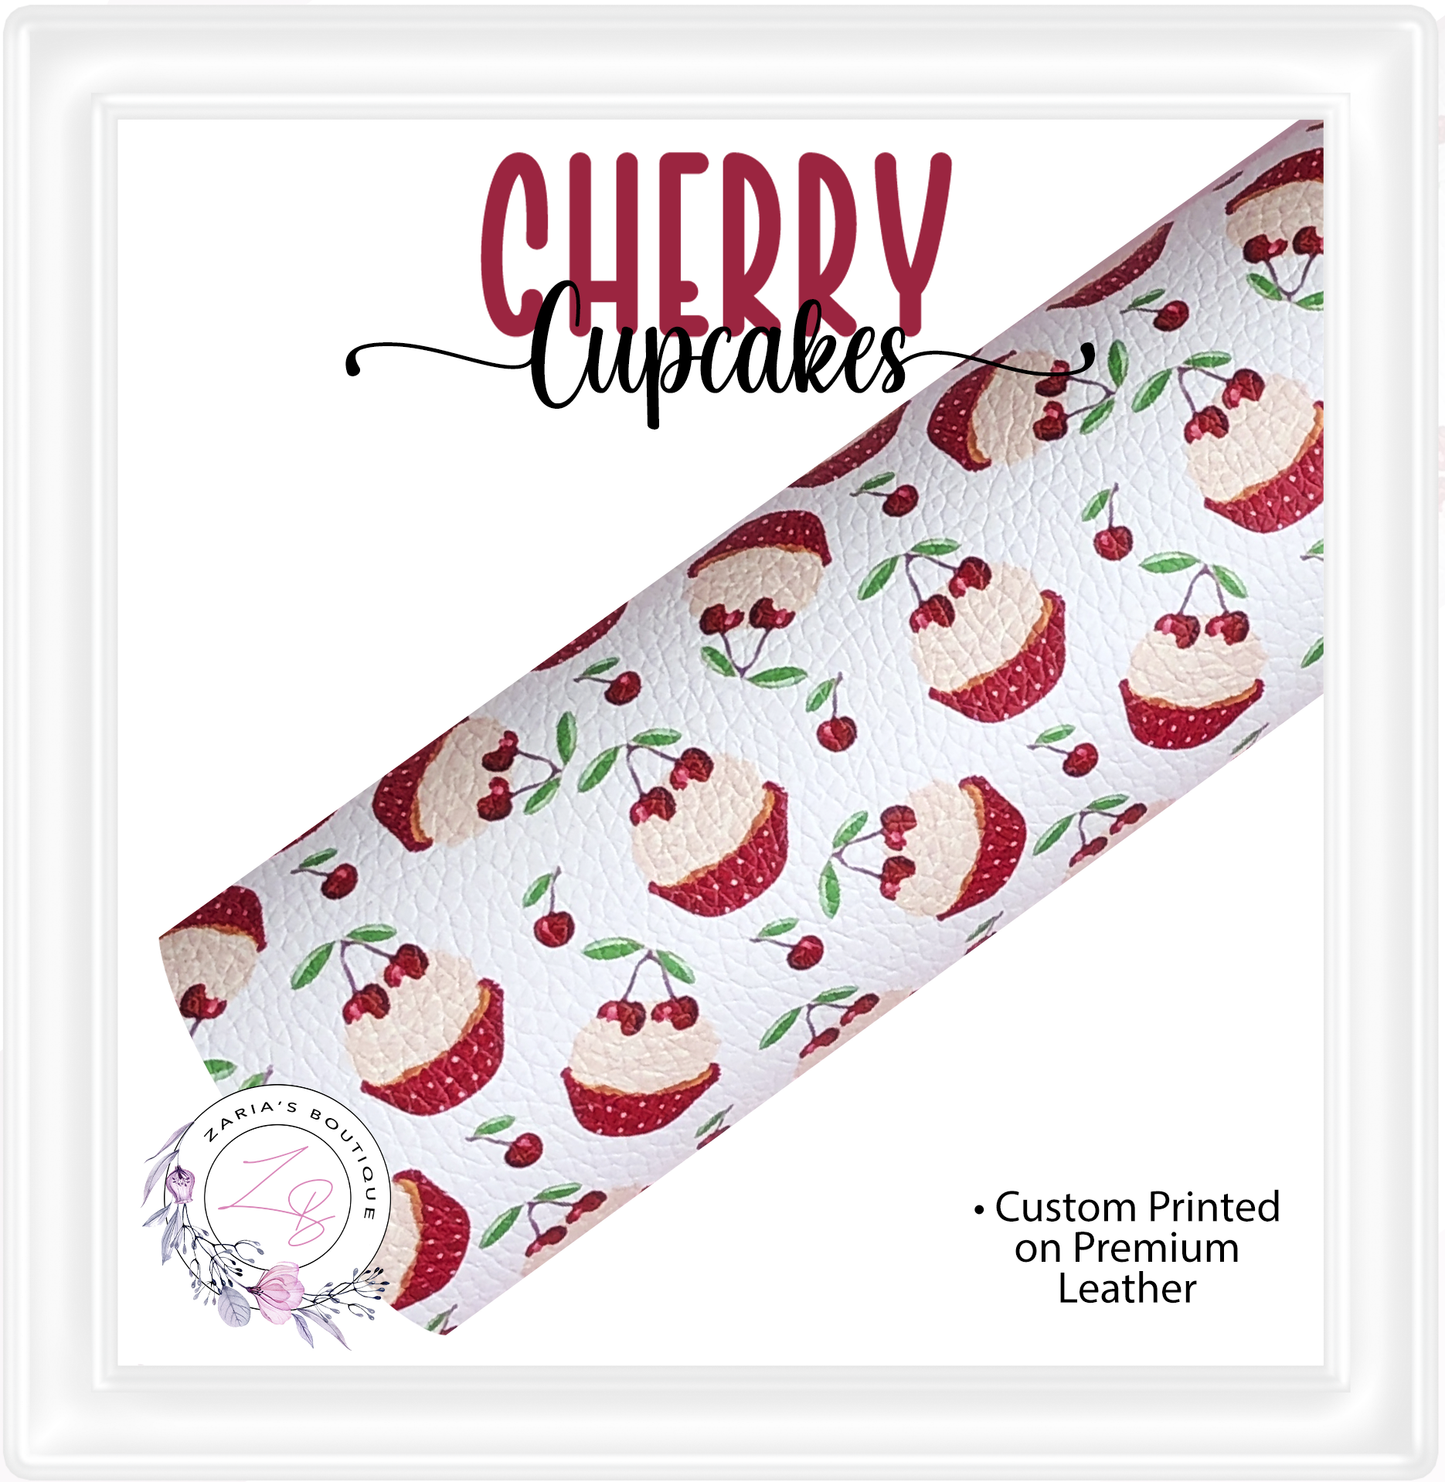 ⋅ Cherry Cupcakes ⋅ Custom Premium Vegan Faux Leather ⋅